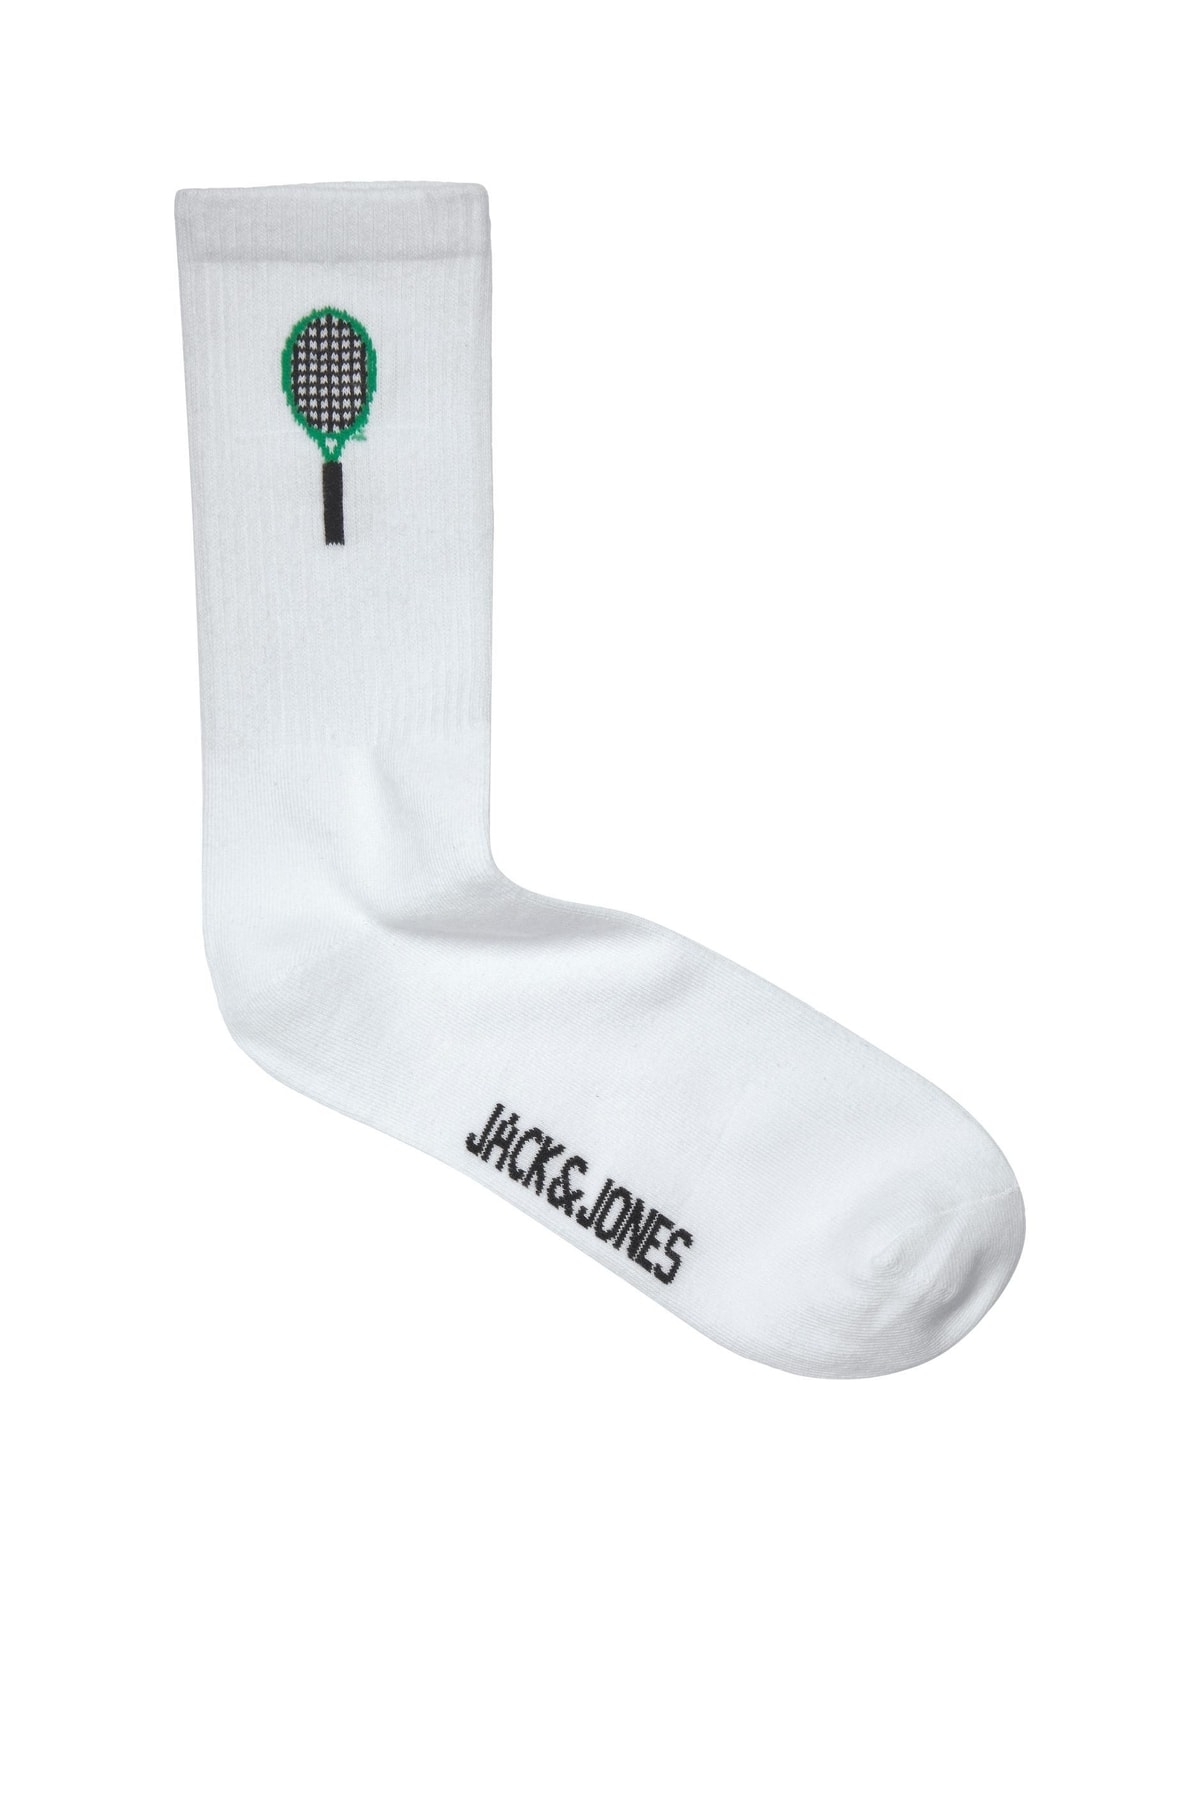 Jack & Jones Positano Tennis Sock Erkek Siyah Çorap 12210542-02